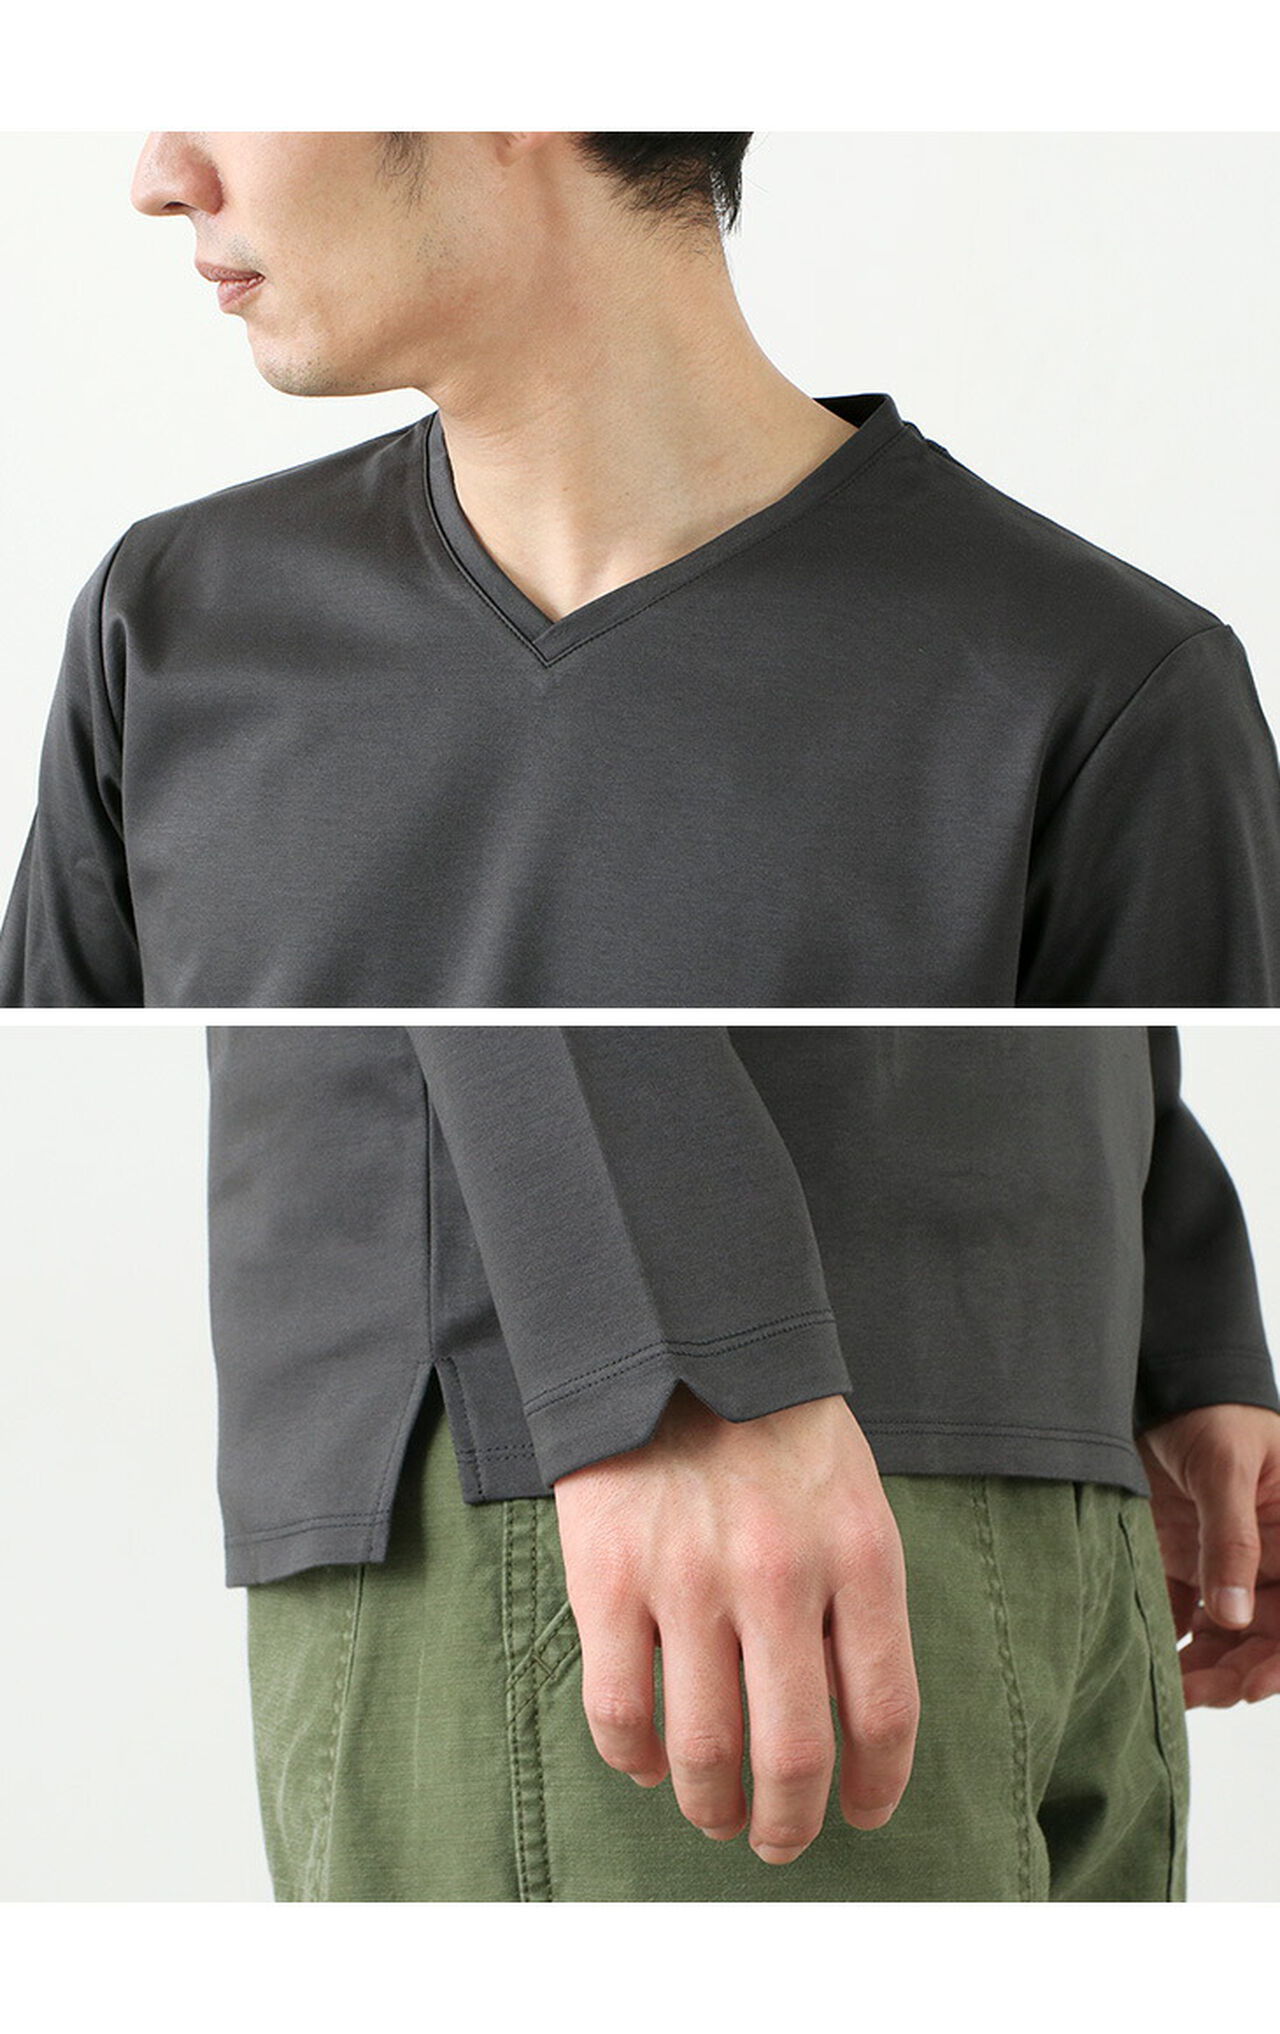 Tokyo Made V-Neck Long Sleeve Dress T-Shirt,, large image number 10